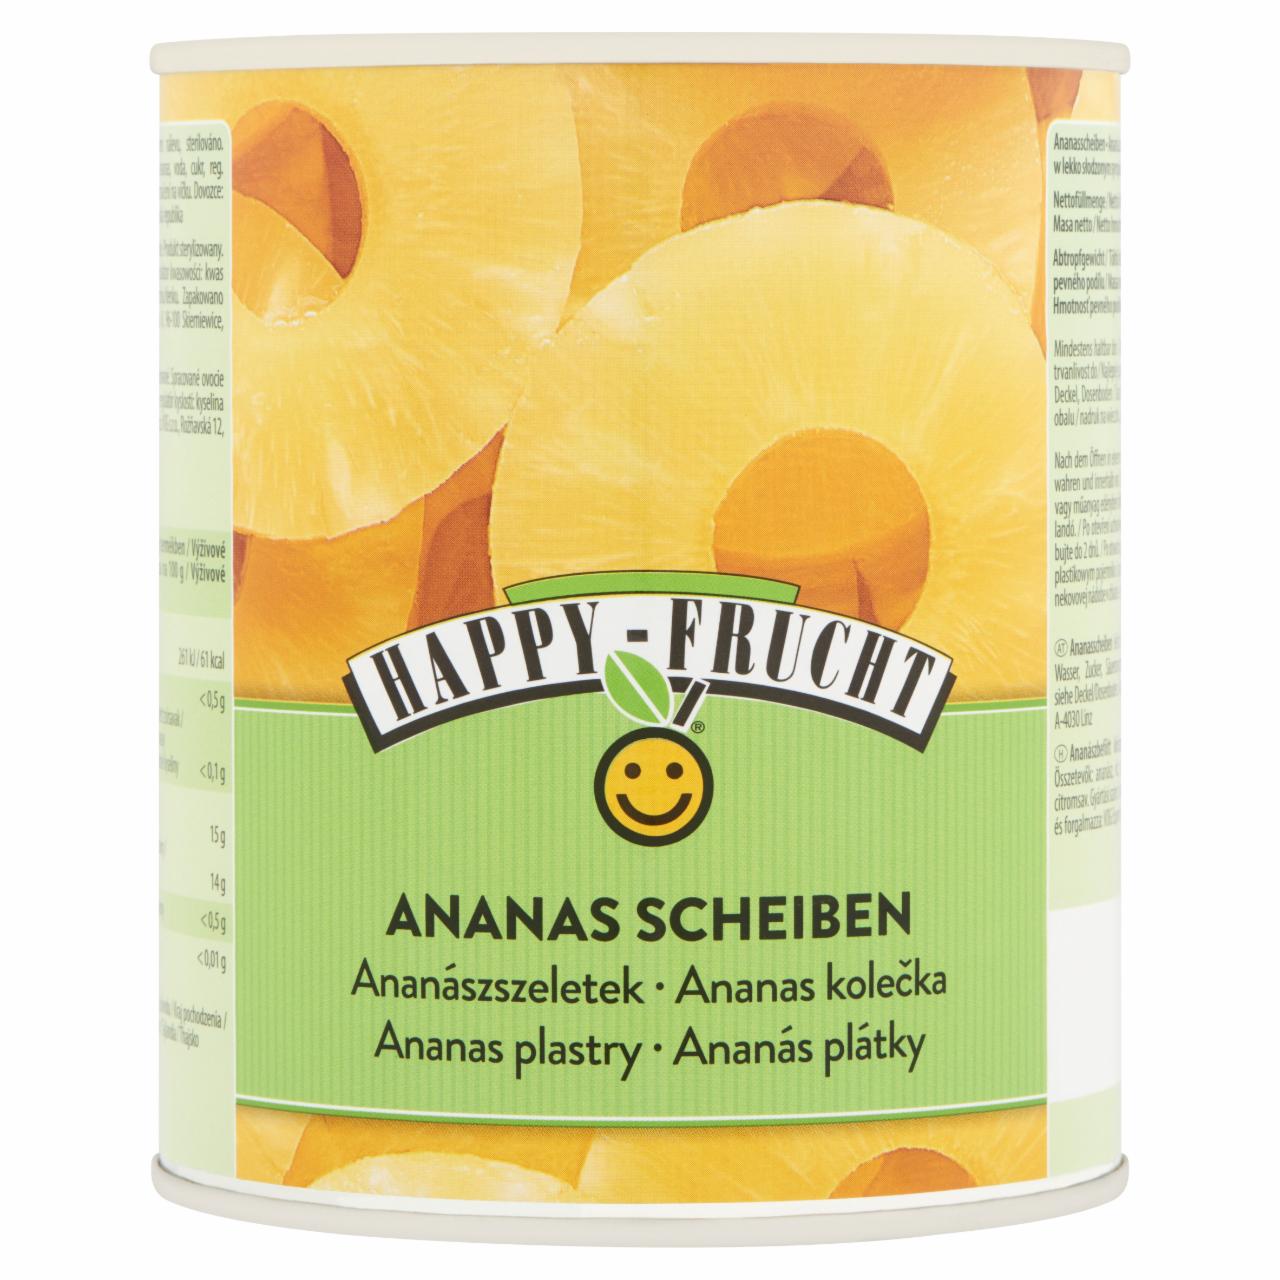 Képek - Happy Frucht ananászszeletek 850 g